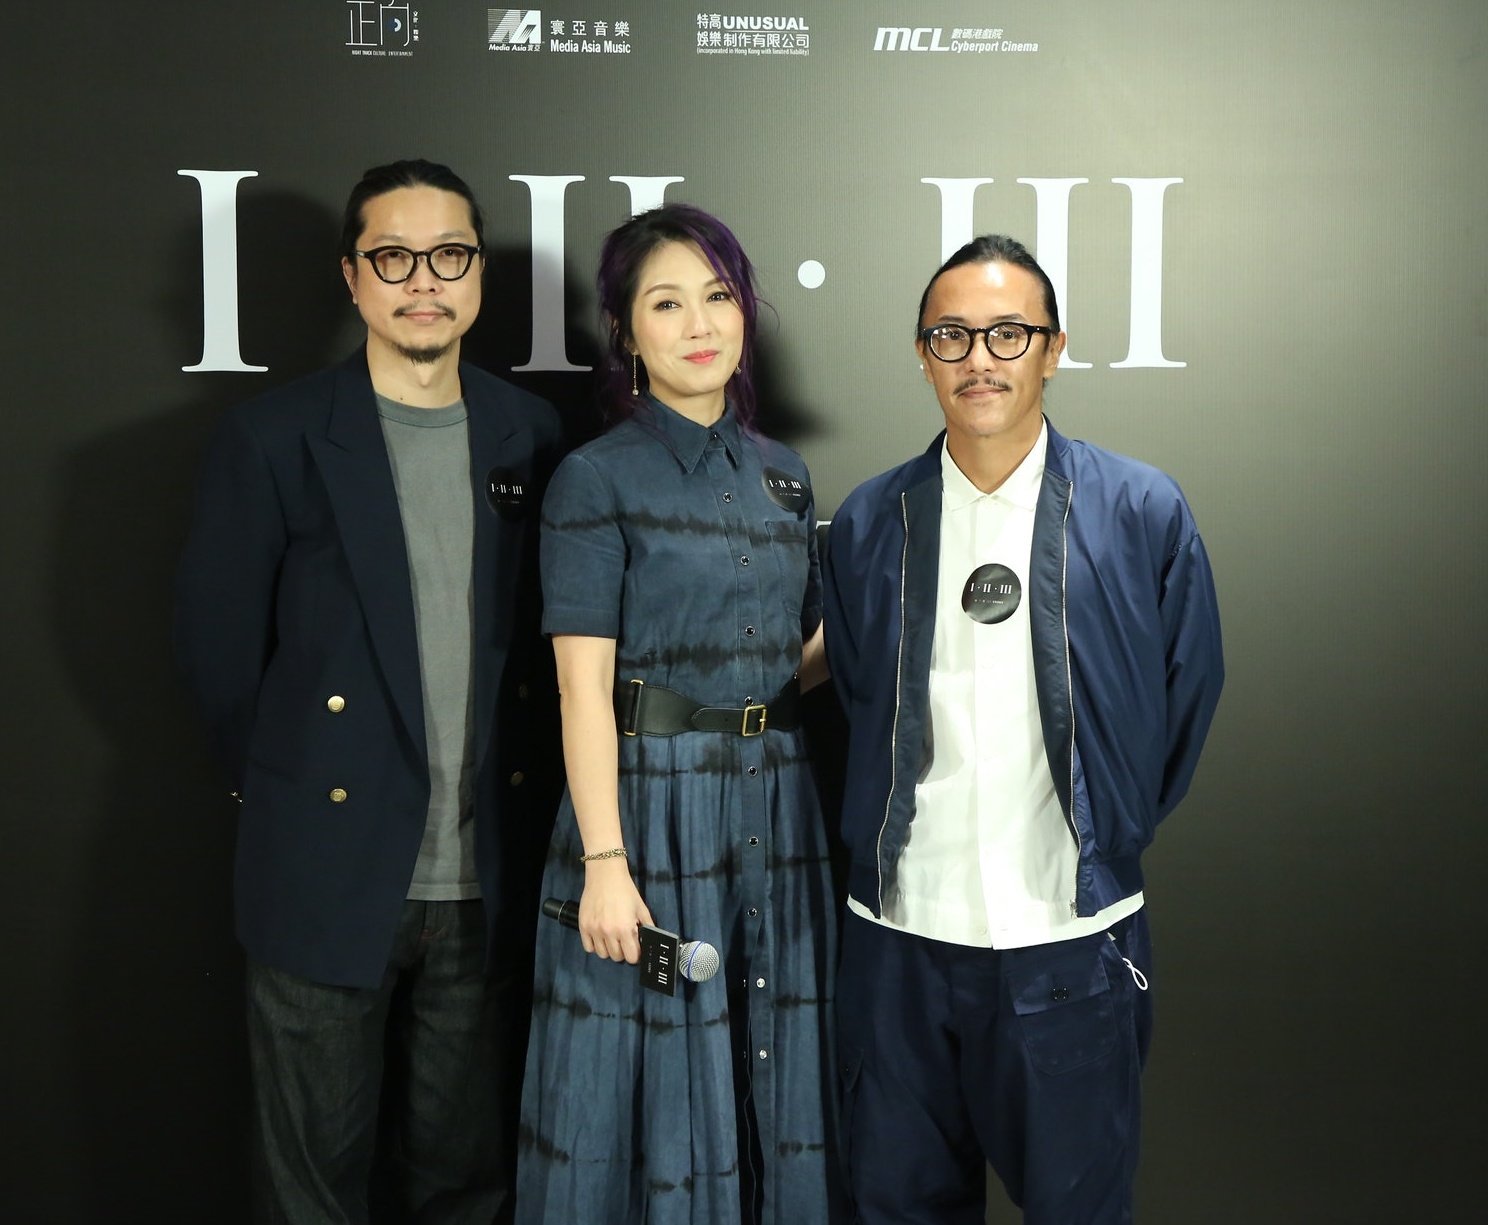 杨千嬅的纪录片首映邀请许多圈中朋友来捧场。